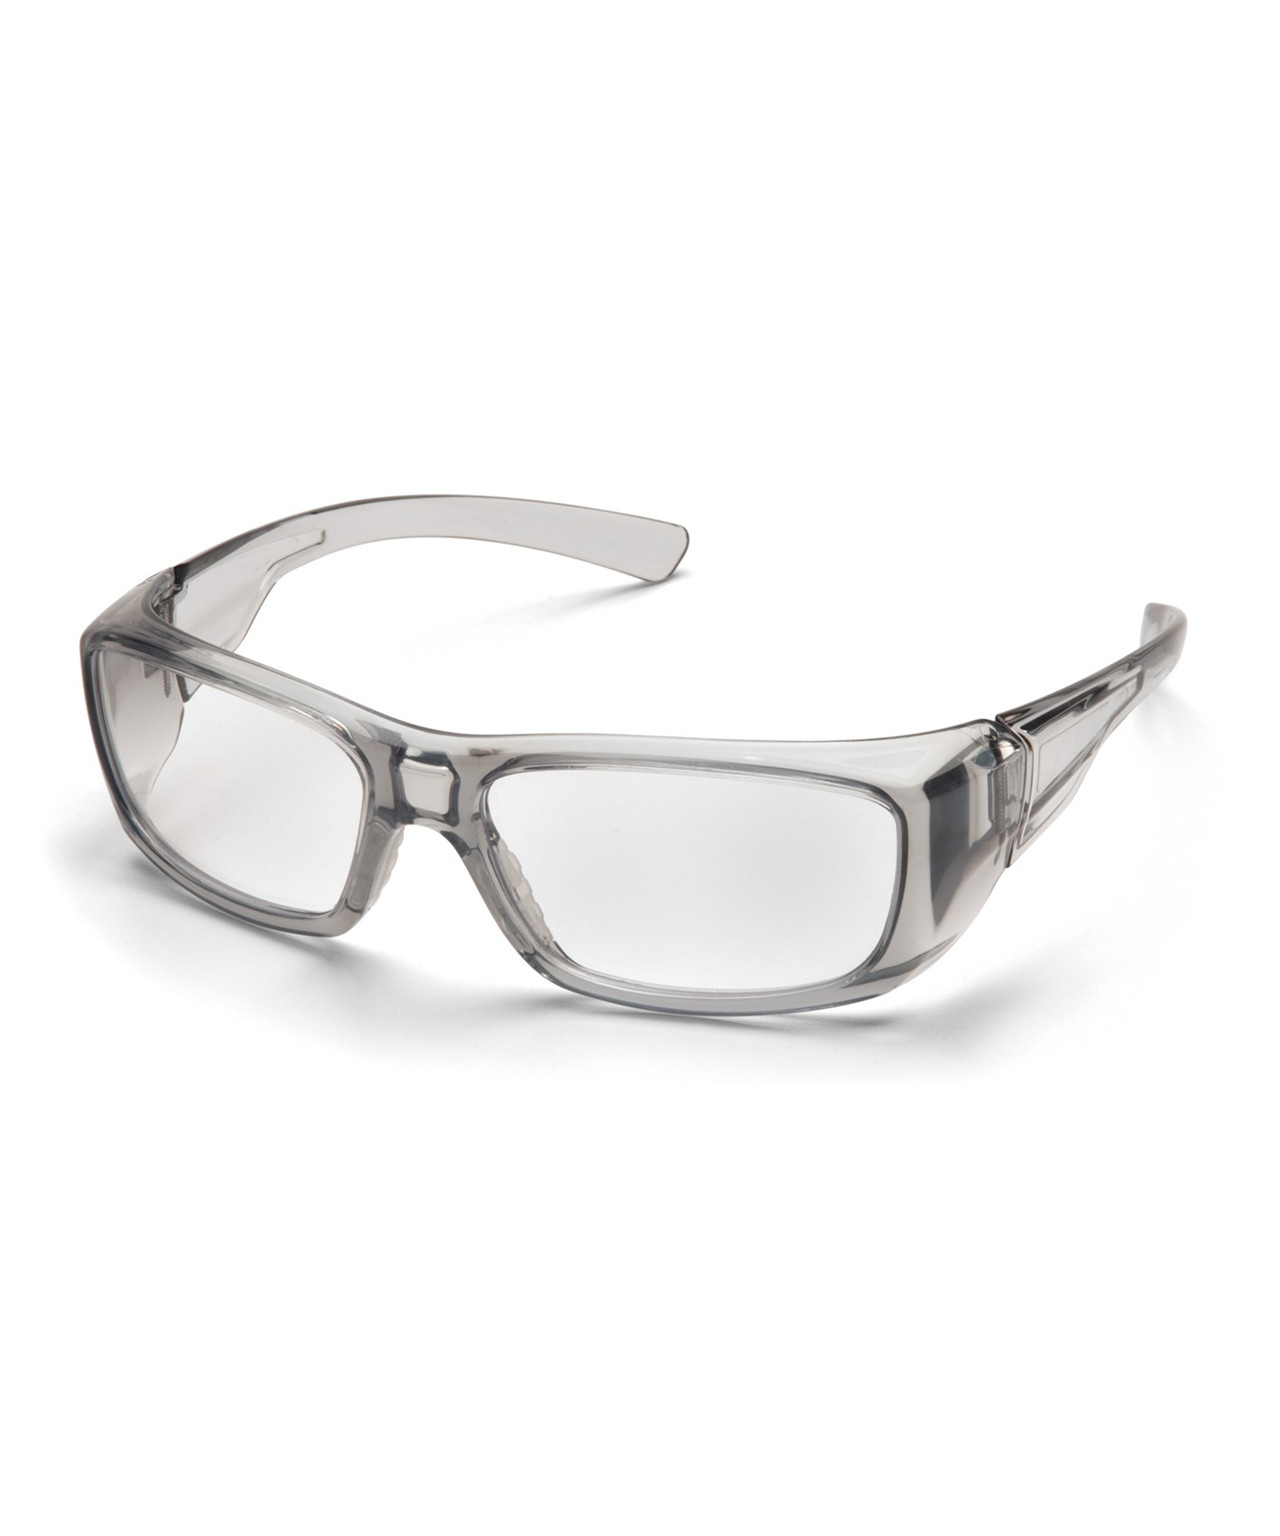 Se Pyramex Emerge sikkerhedsbrille m/styrke +2,0 hos Specialbutikken